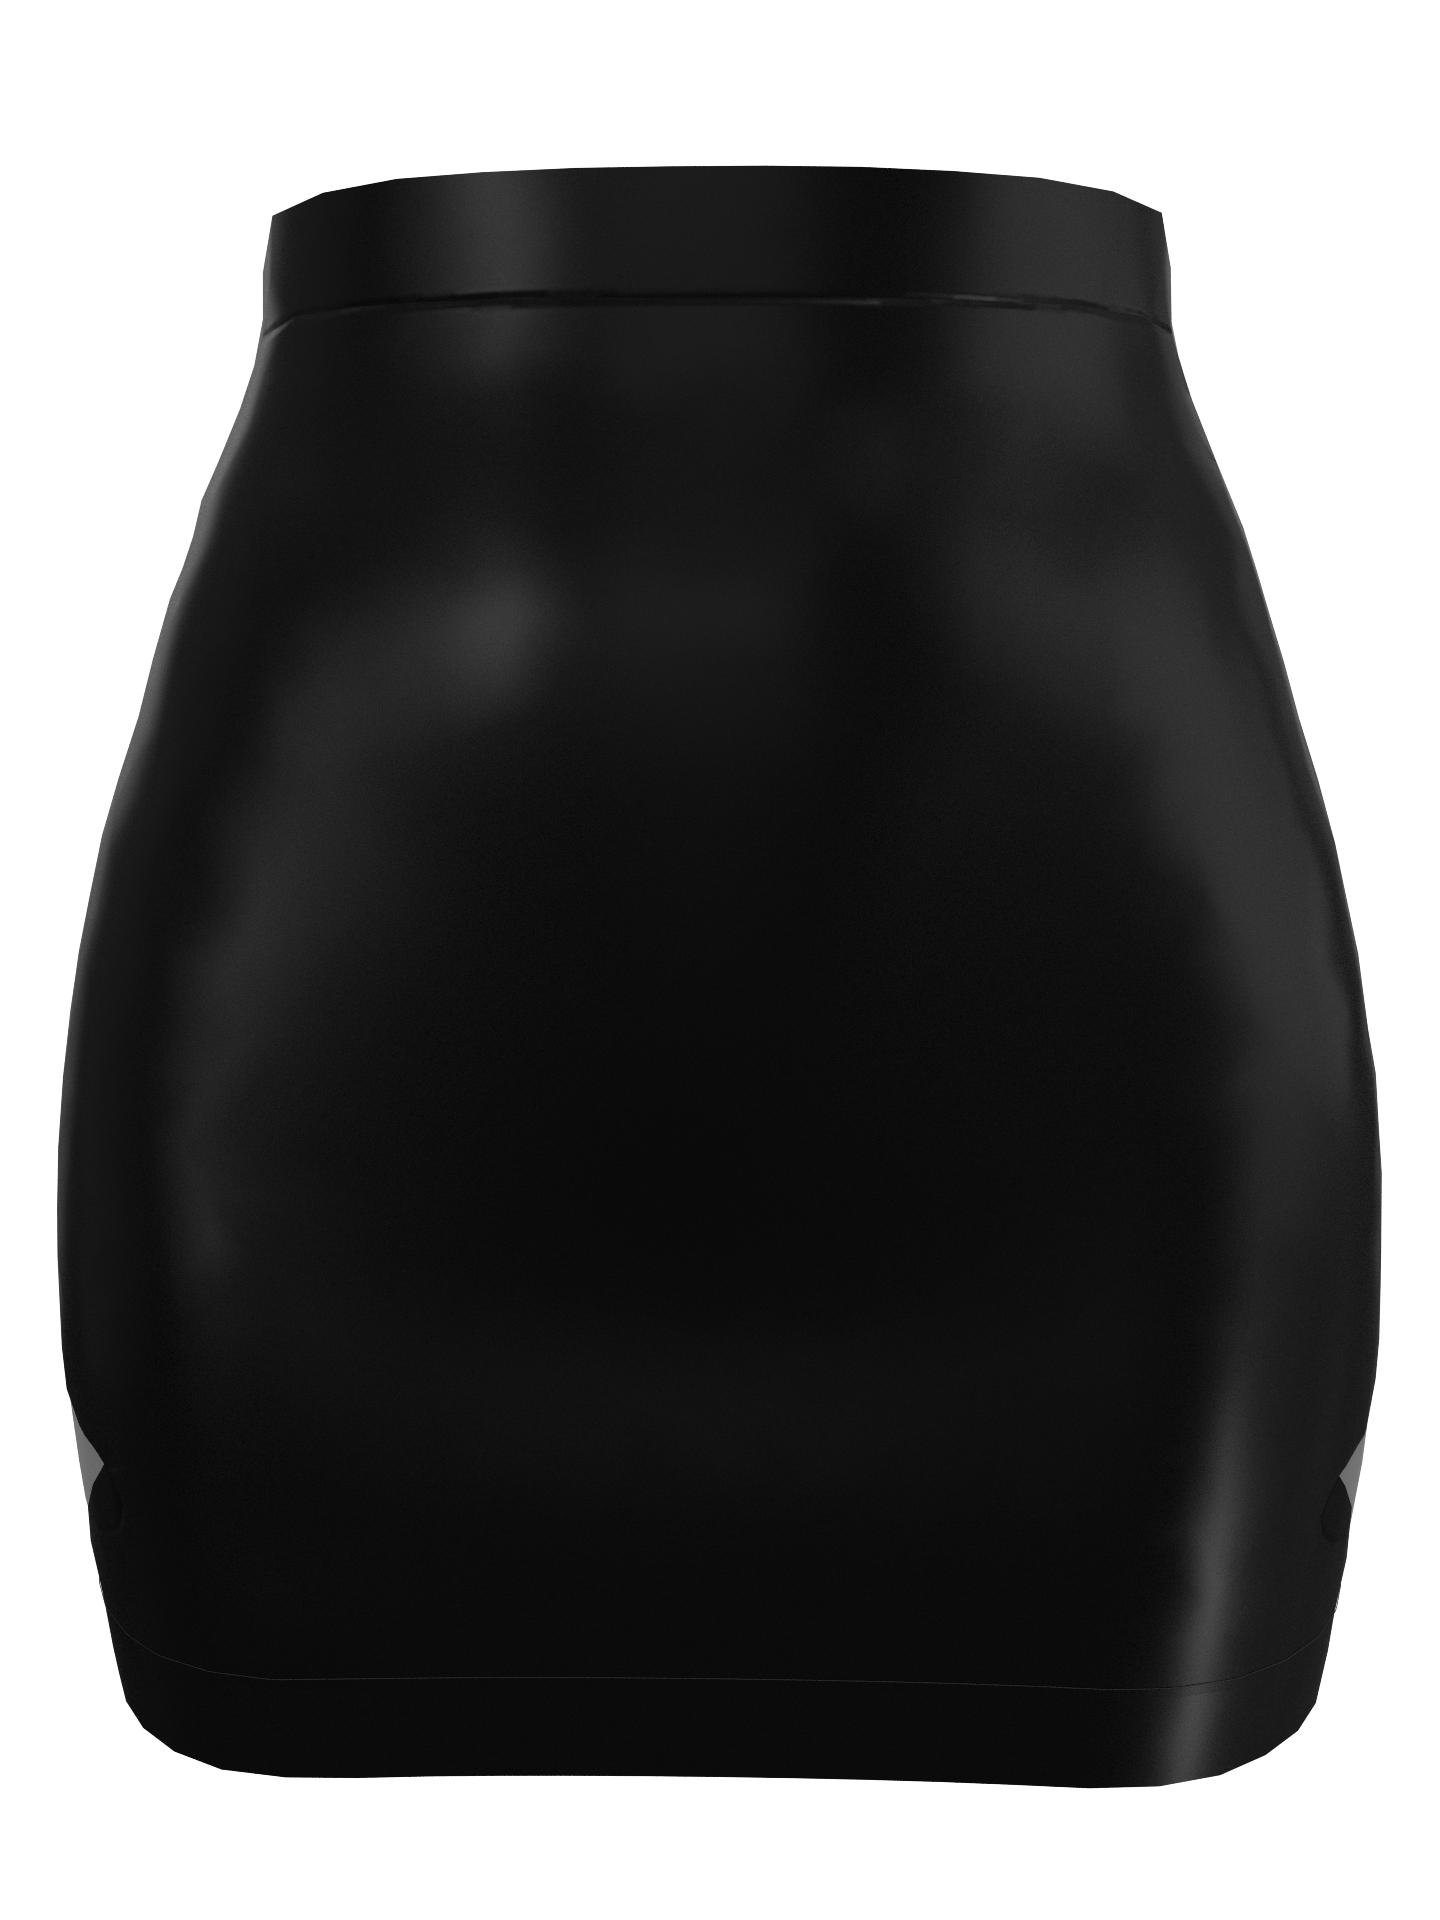 Tulip Mini Skirt Black by GABBY ONDREJECH